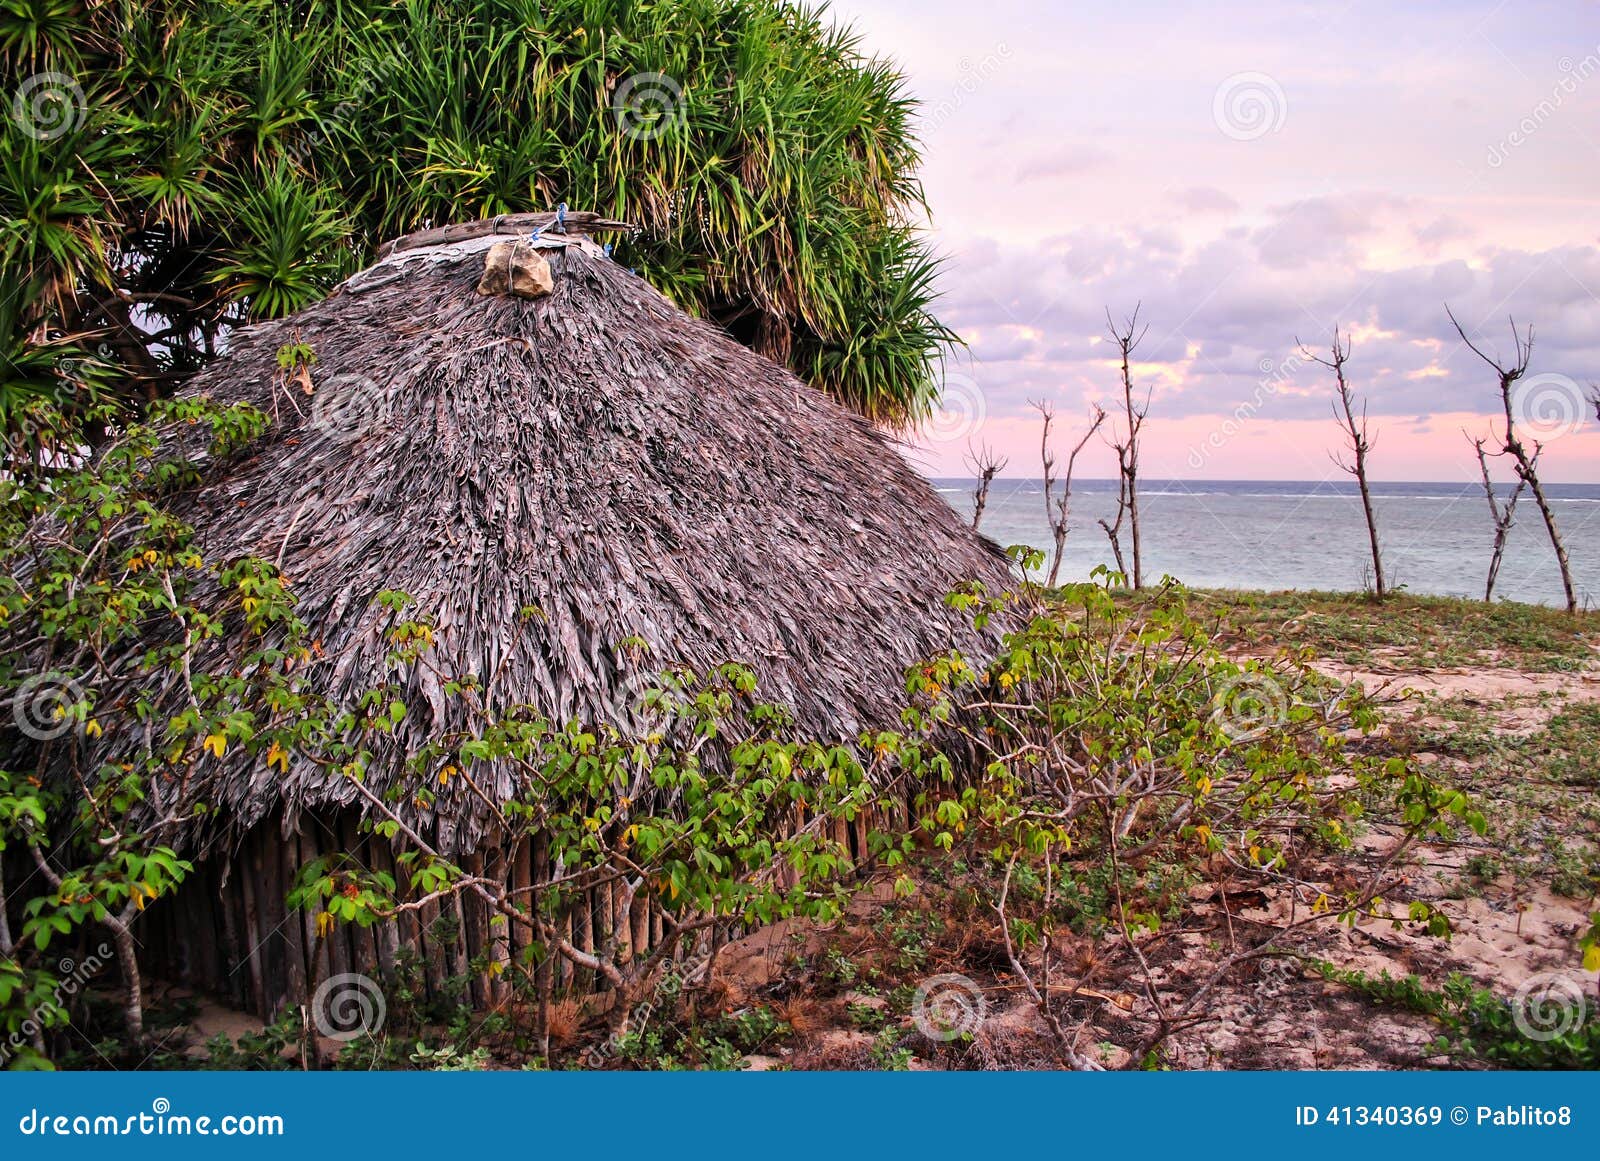 villager's hut in savu island